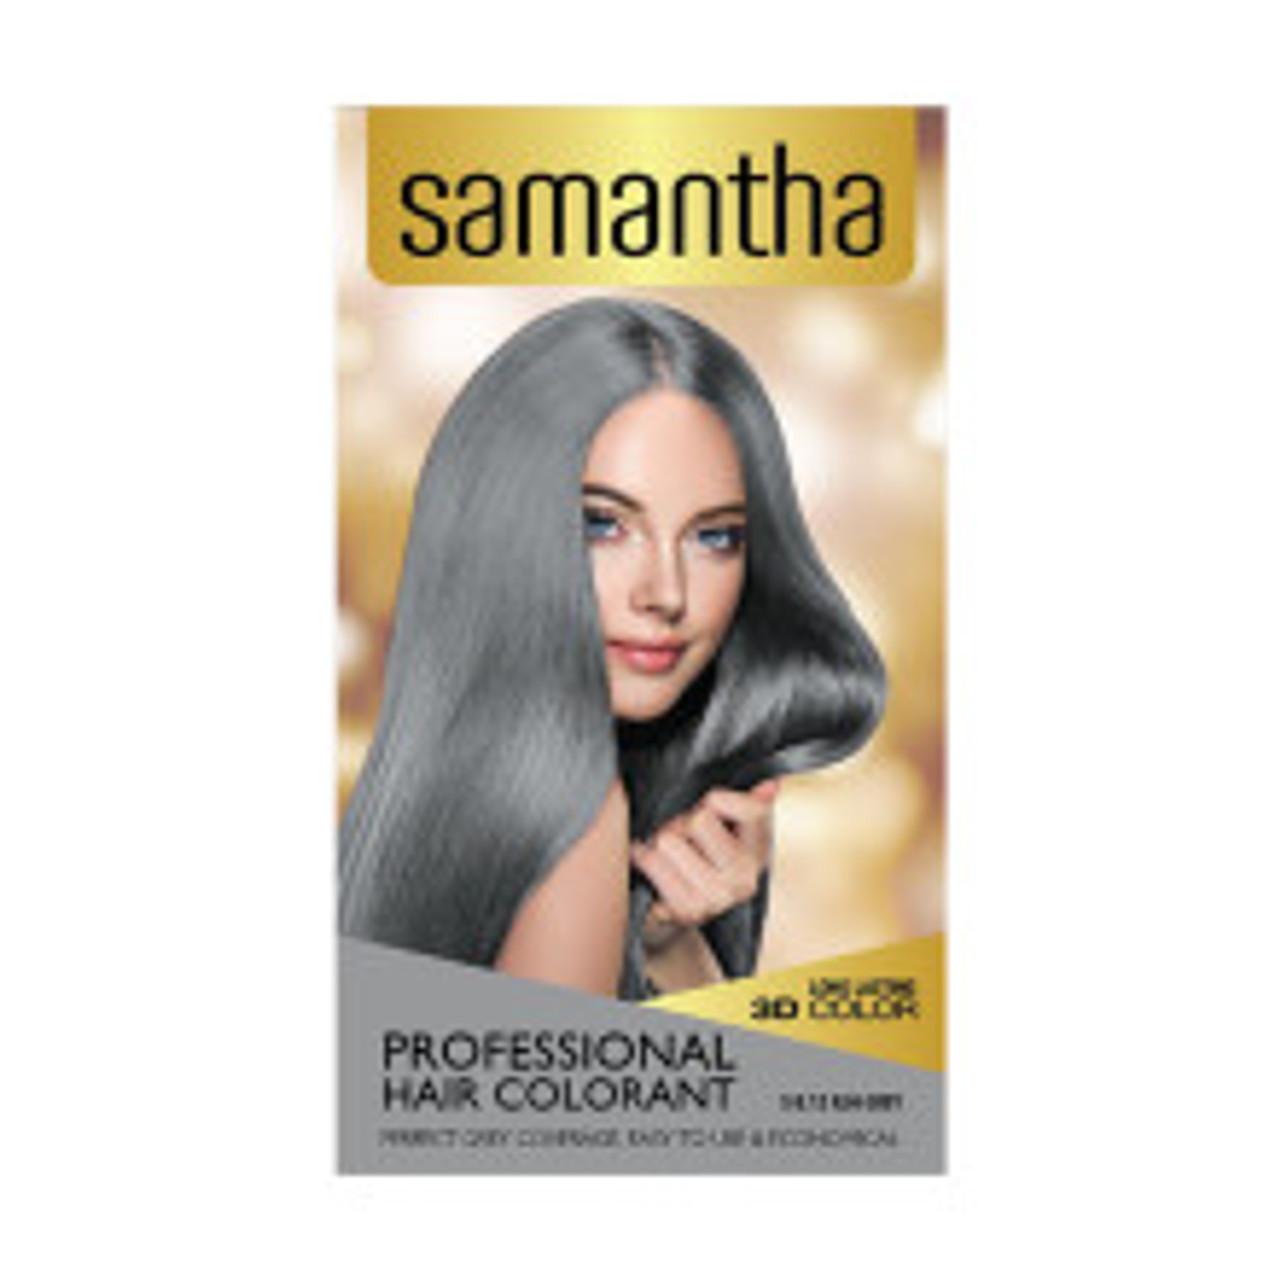 Samantha Hair Colorant Ash Grey Box 25gr